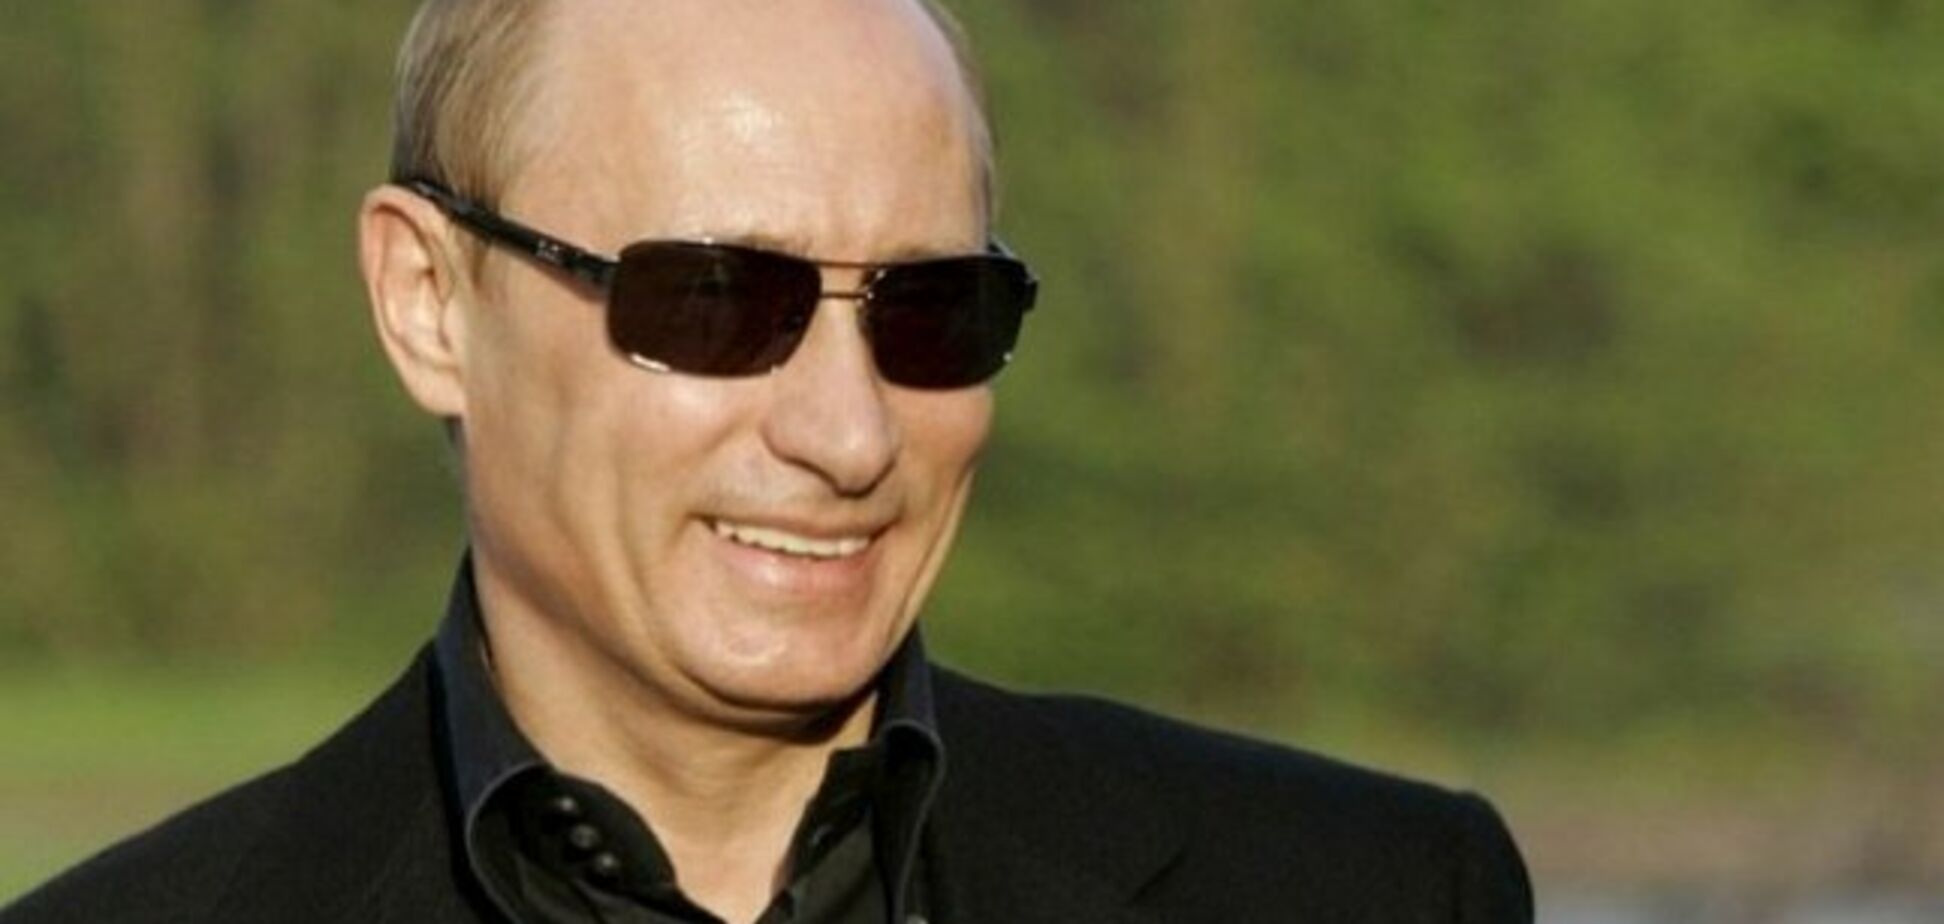 ''Нашему президенту 66'': как росСМИ подлизывались к Путину в день рождения